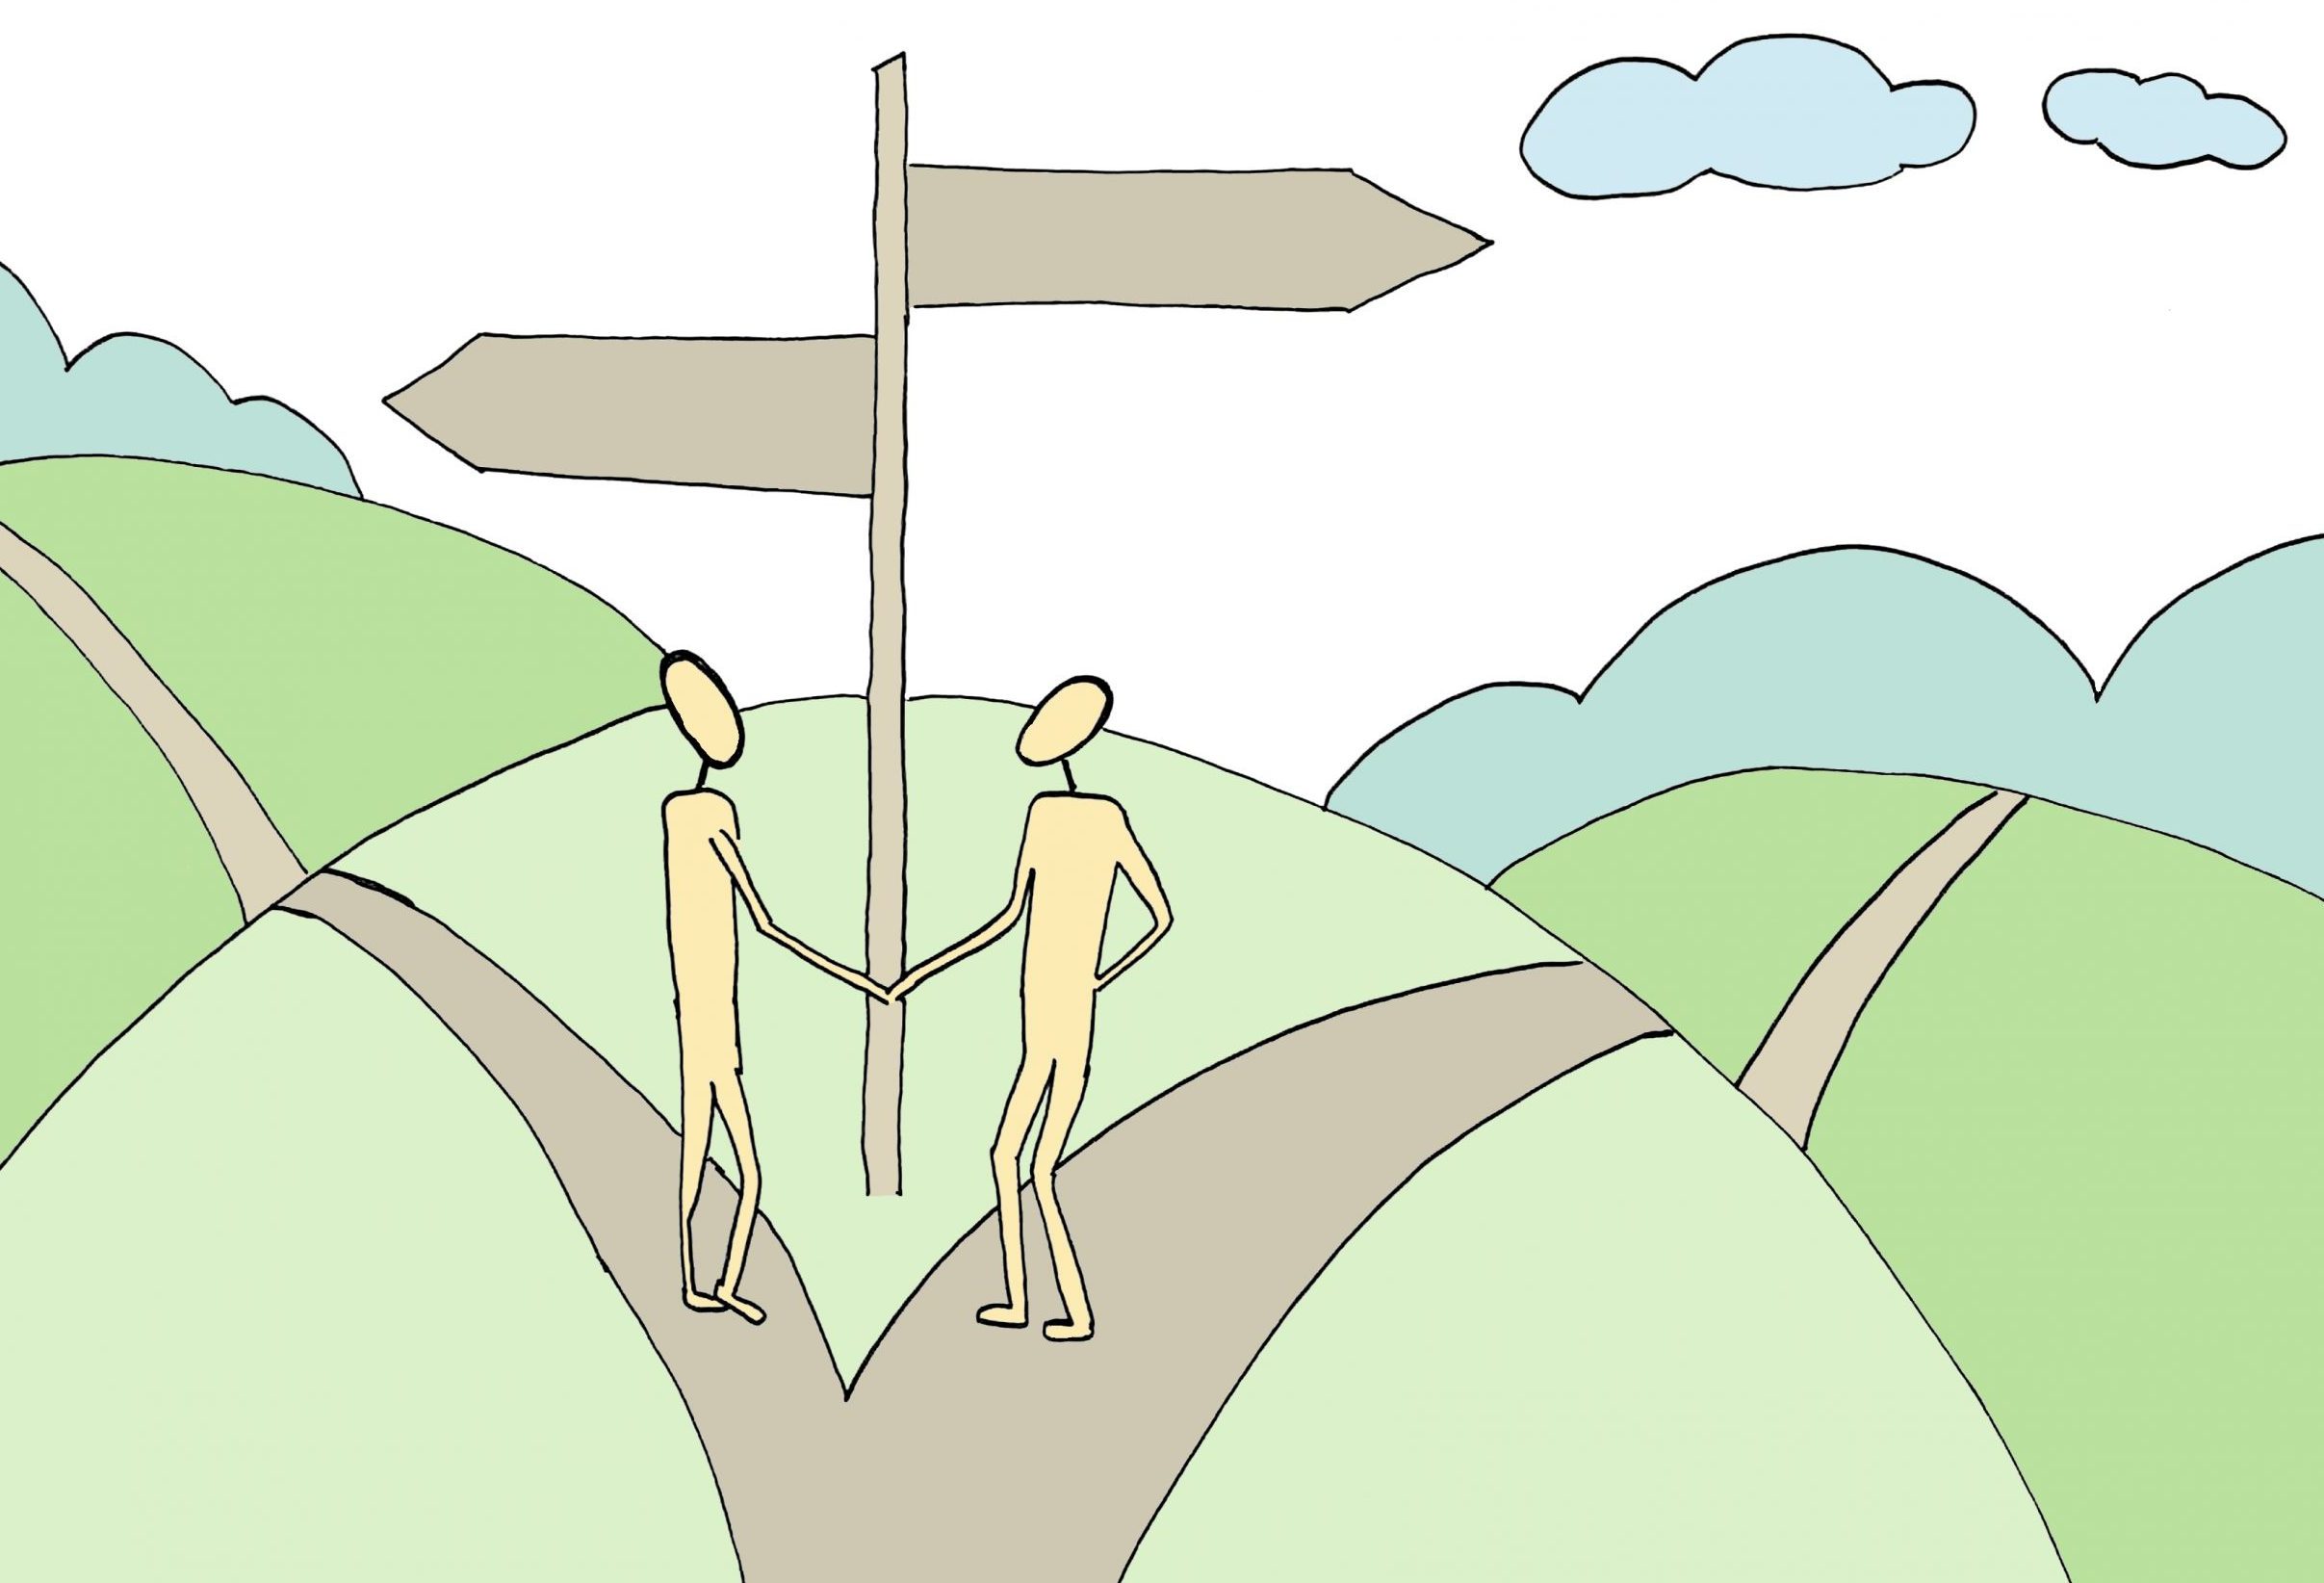 Grafik, die zwei Menschen zeigt, die sich die Hände reichen und in unterschiedliche Richtungen gehen